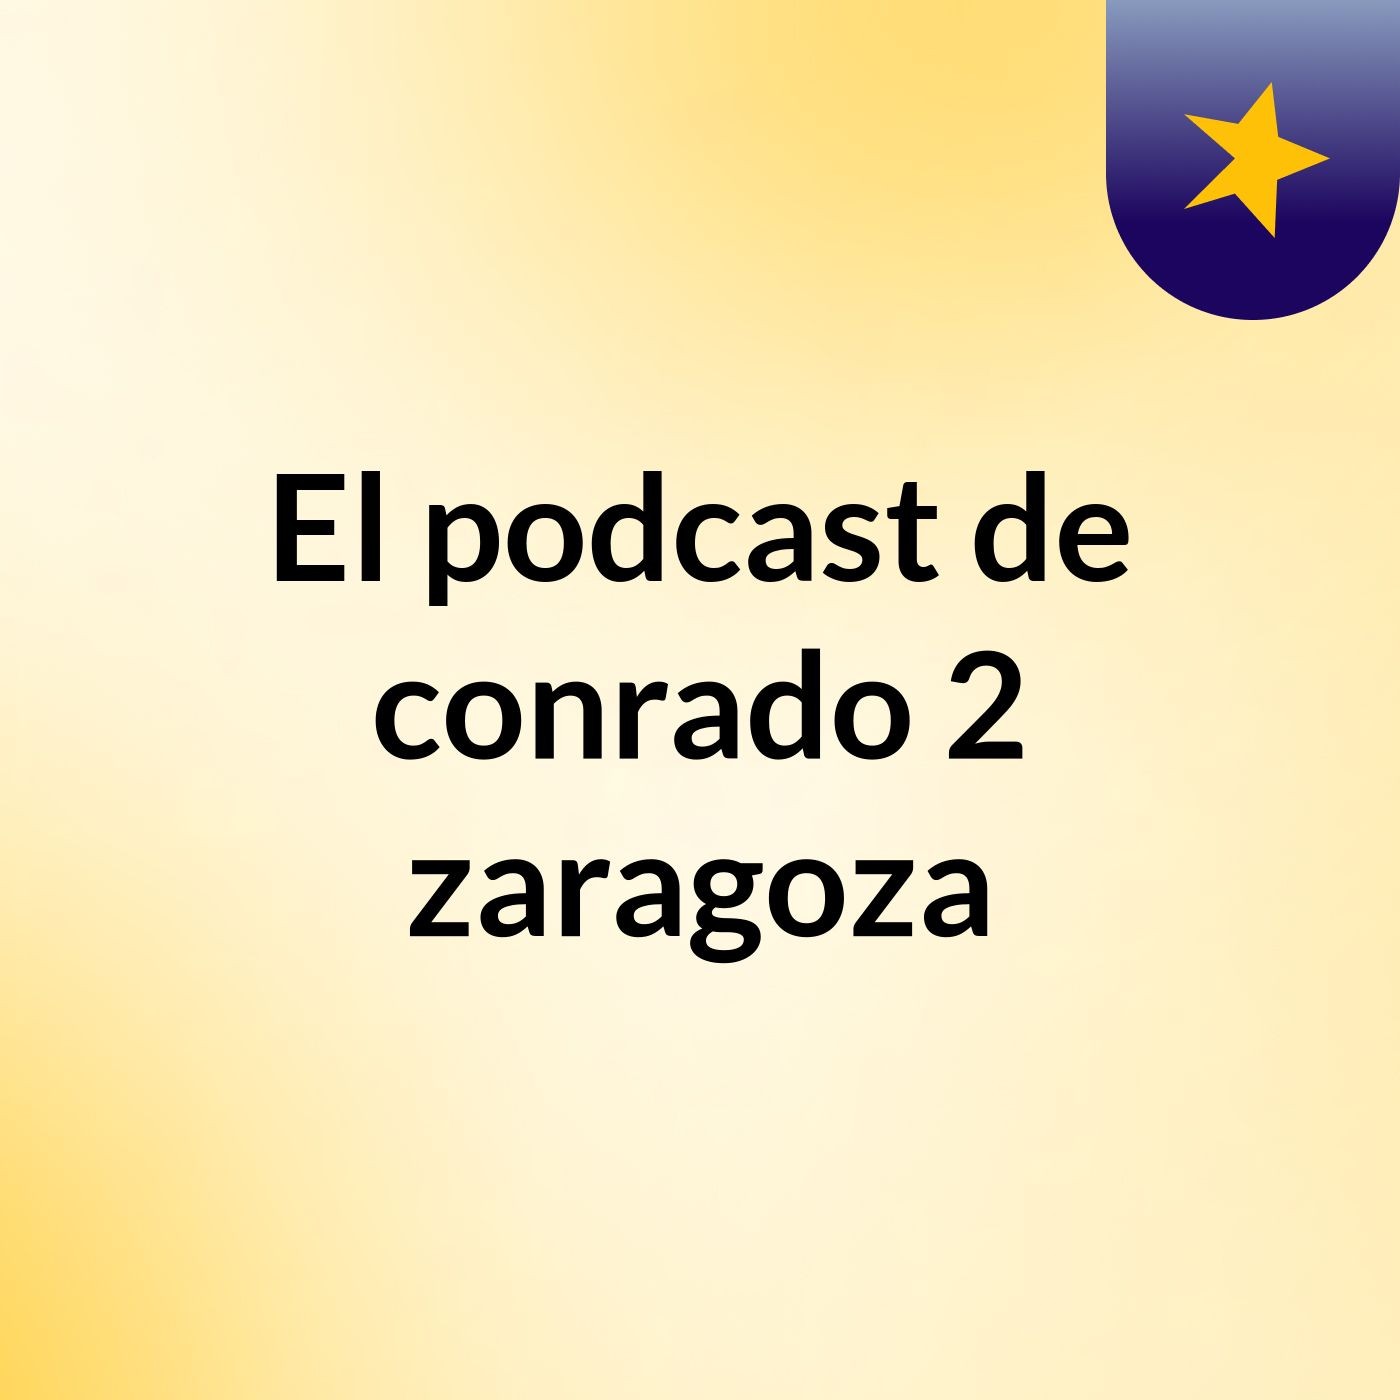 FEpisodio 13 - El podcast de conrado 2 zaragoza